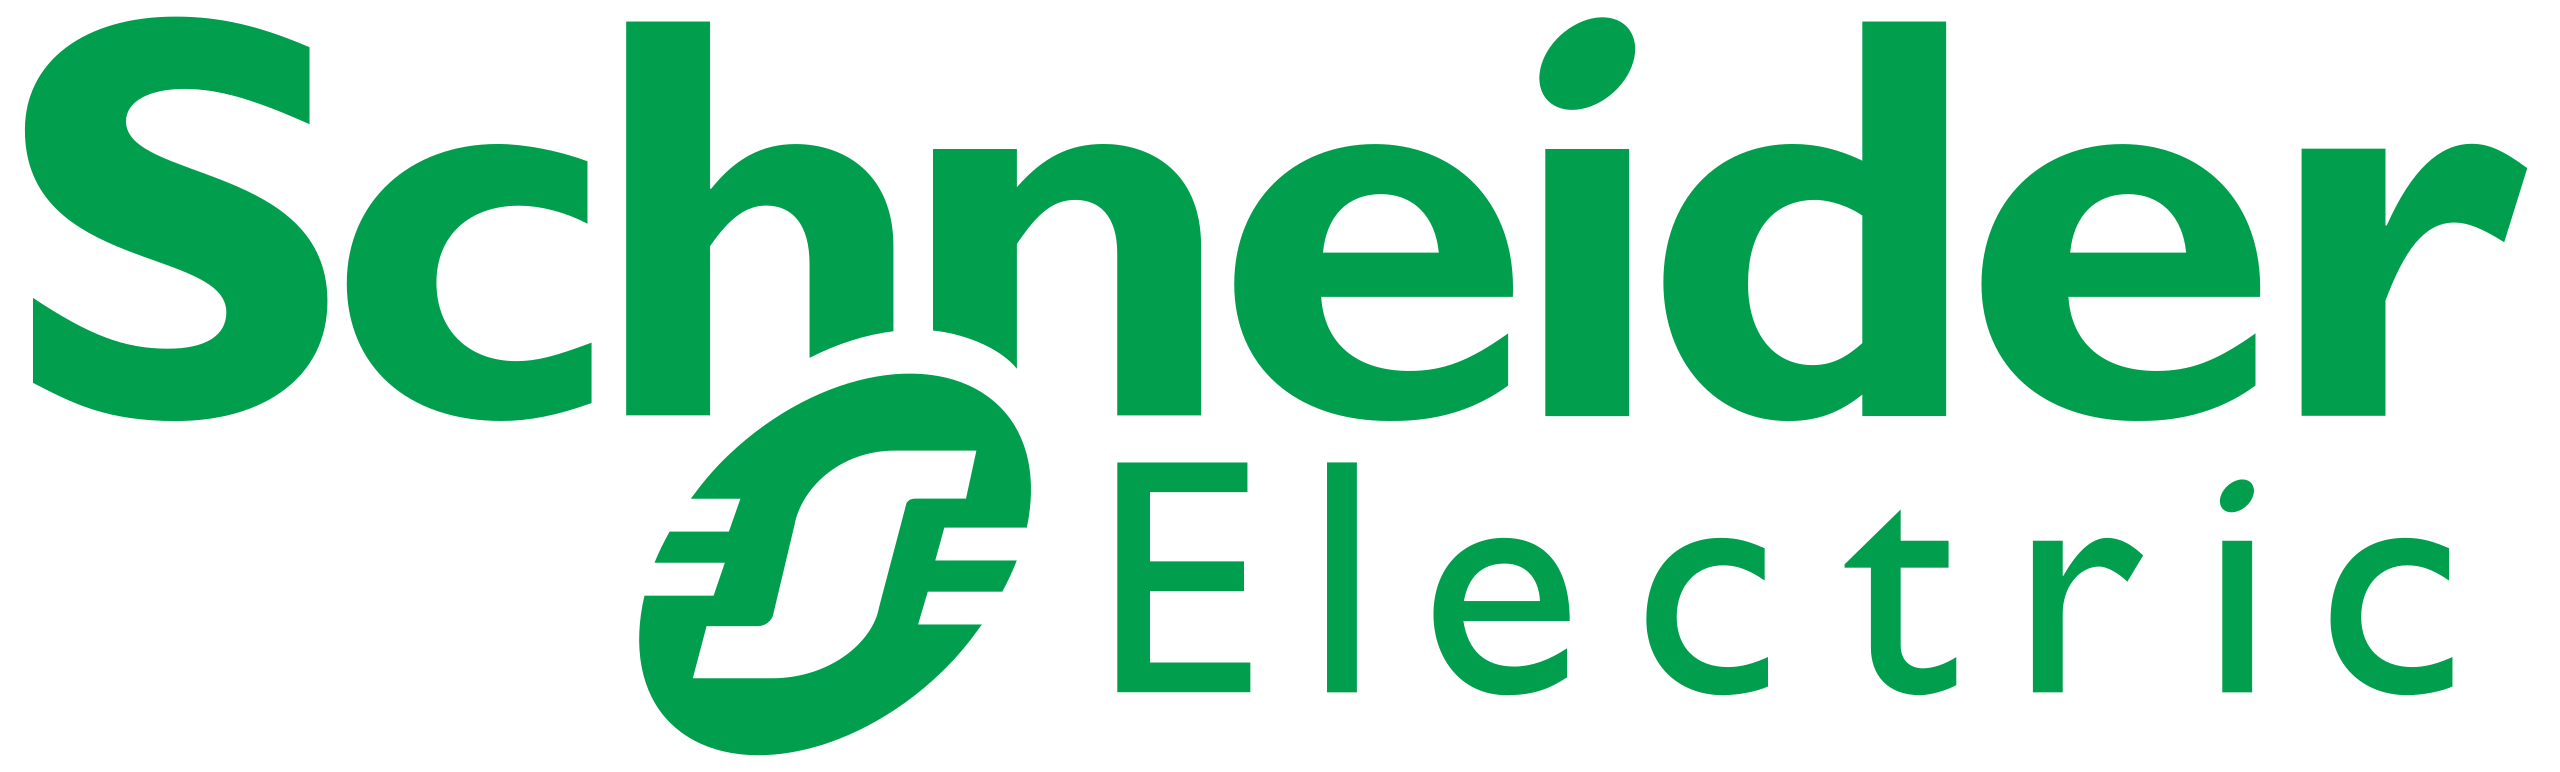 Schneider_Electric logo